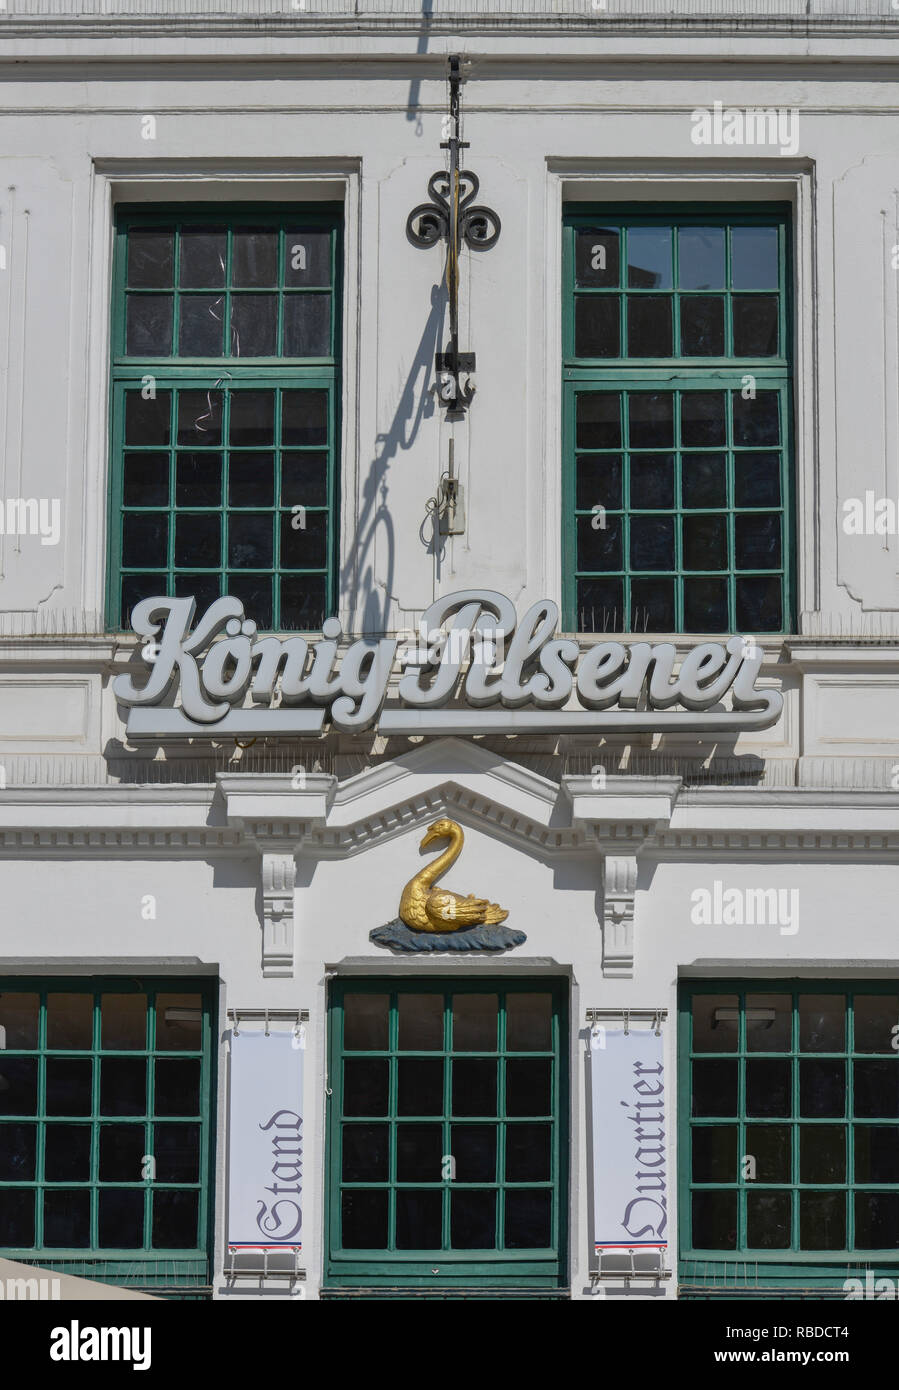 Brauerei Golden Swan, Markt, Aachen, Nordrhein-Westfalen, Deutschland, Brauhaus Goldener Schwan, Markt,, 92660 Stockfoto